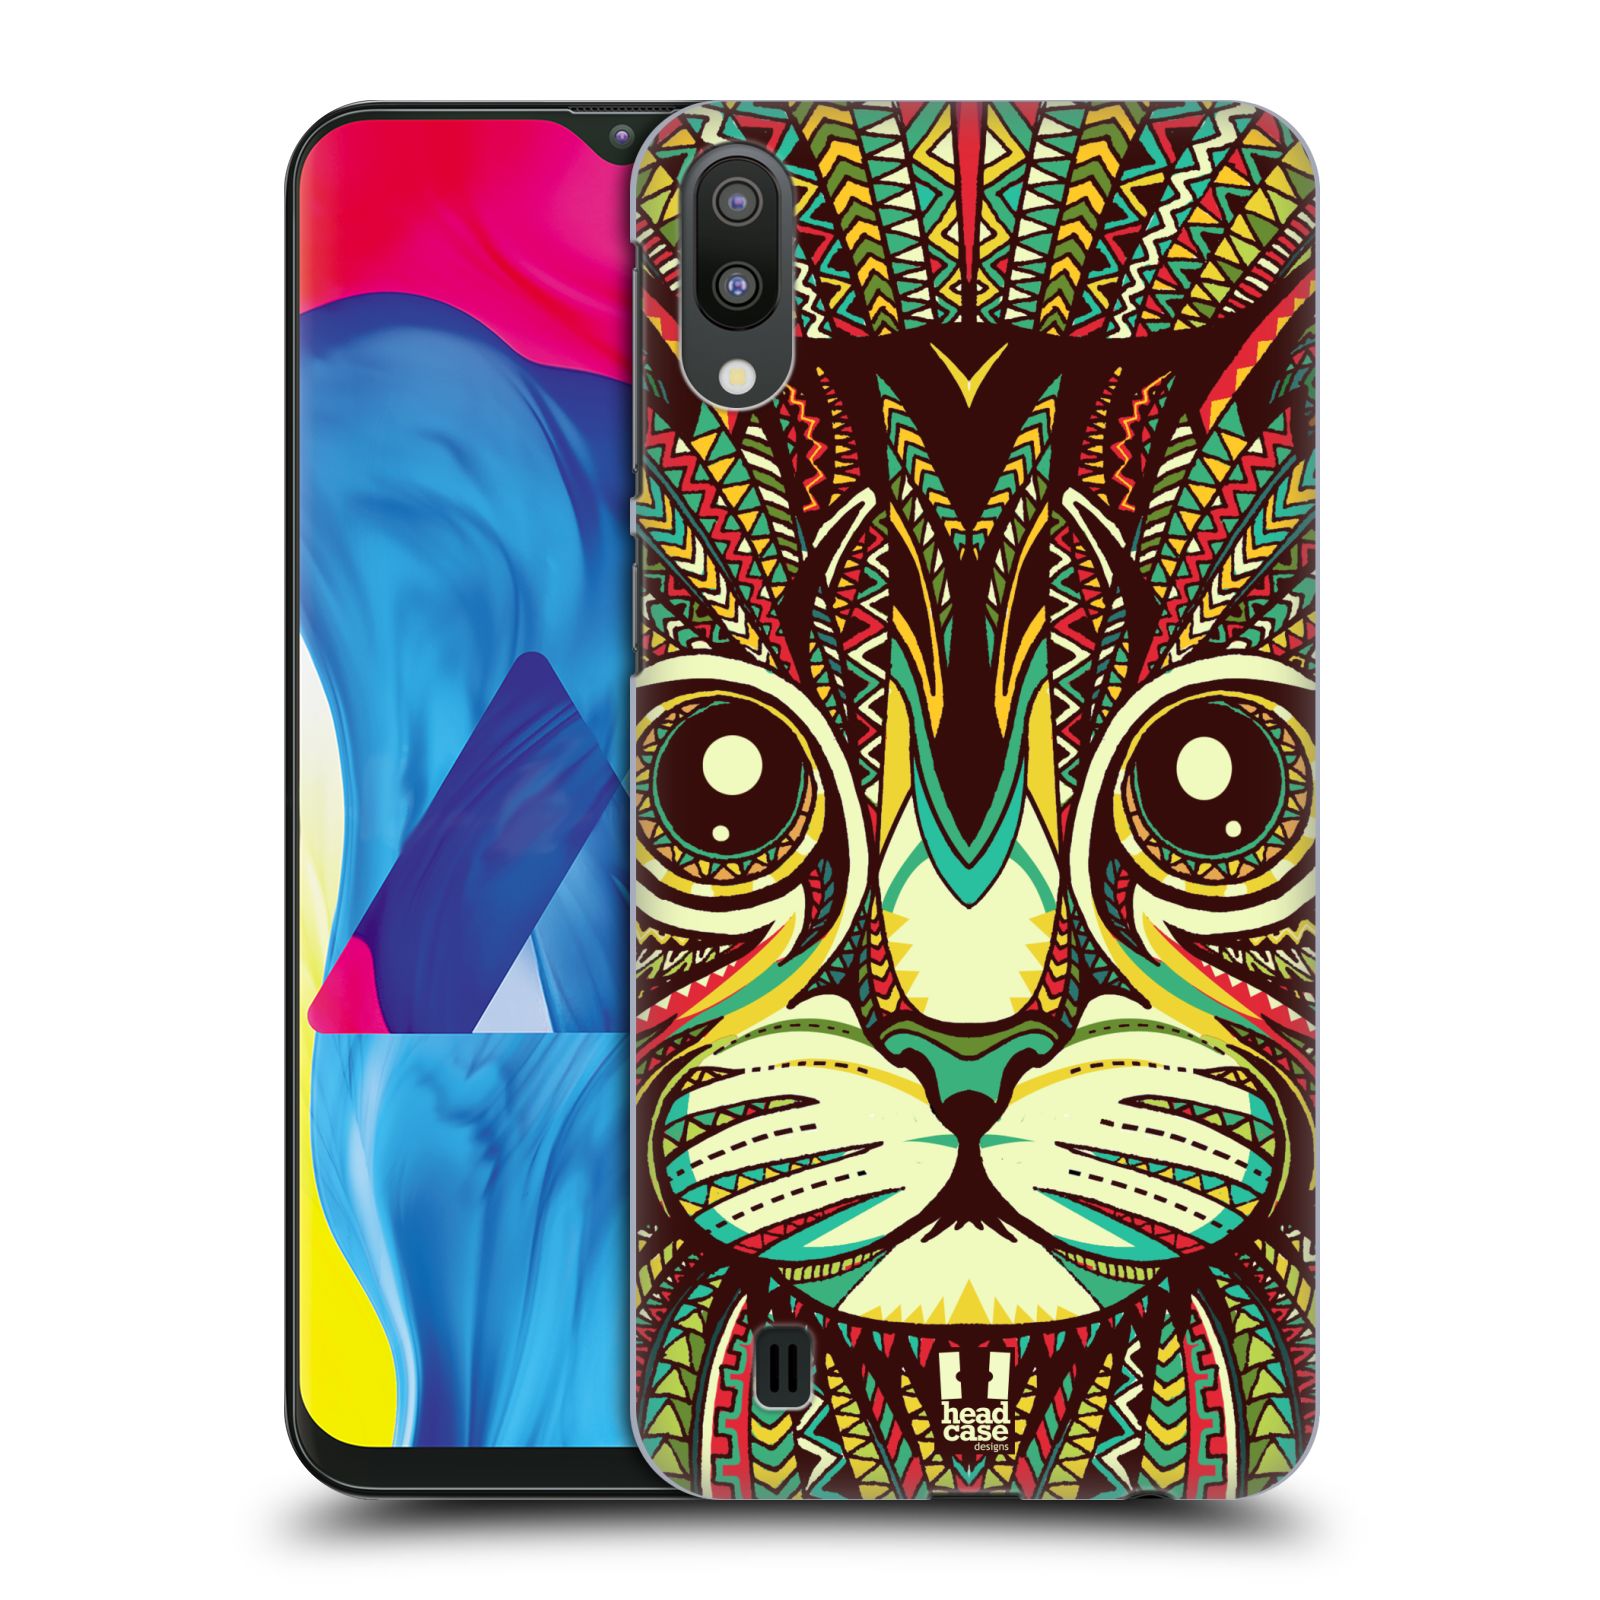 Plastový obal HEAD CASE na mobil Samsung Galaxy M10 vzor Aztécký motiv zvíře 2 kotě